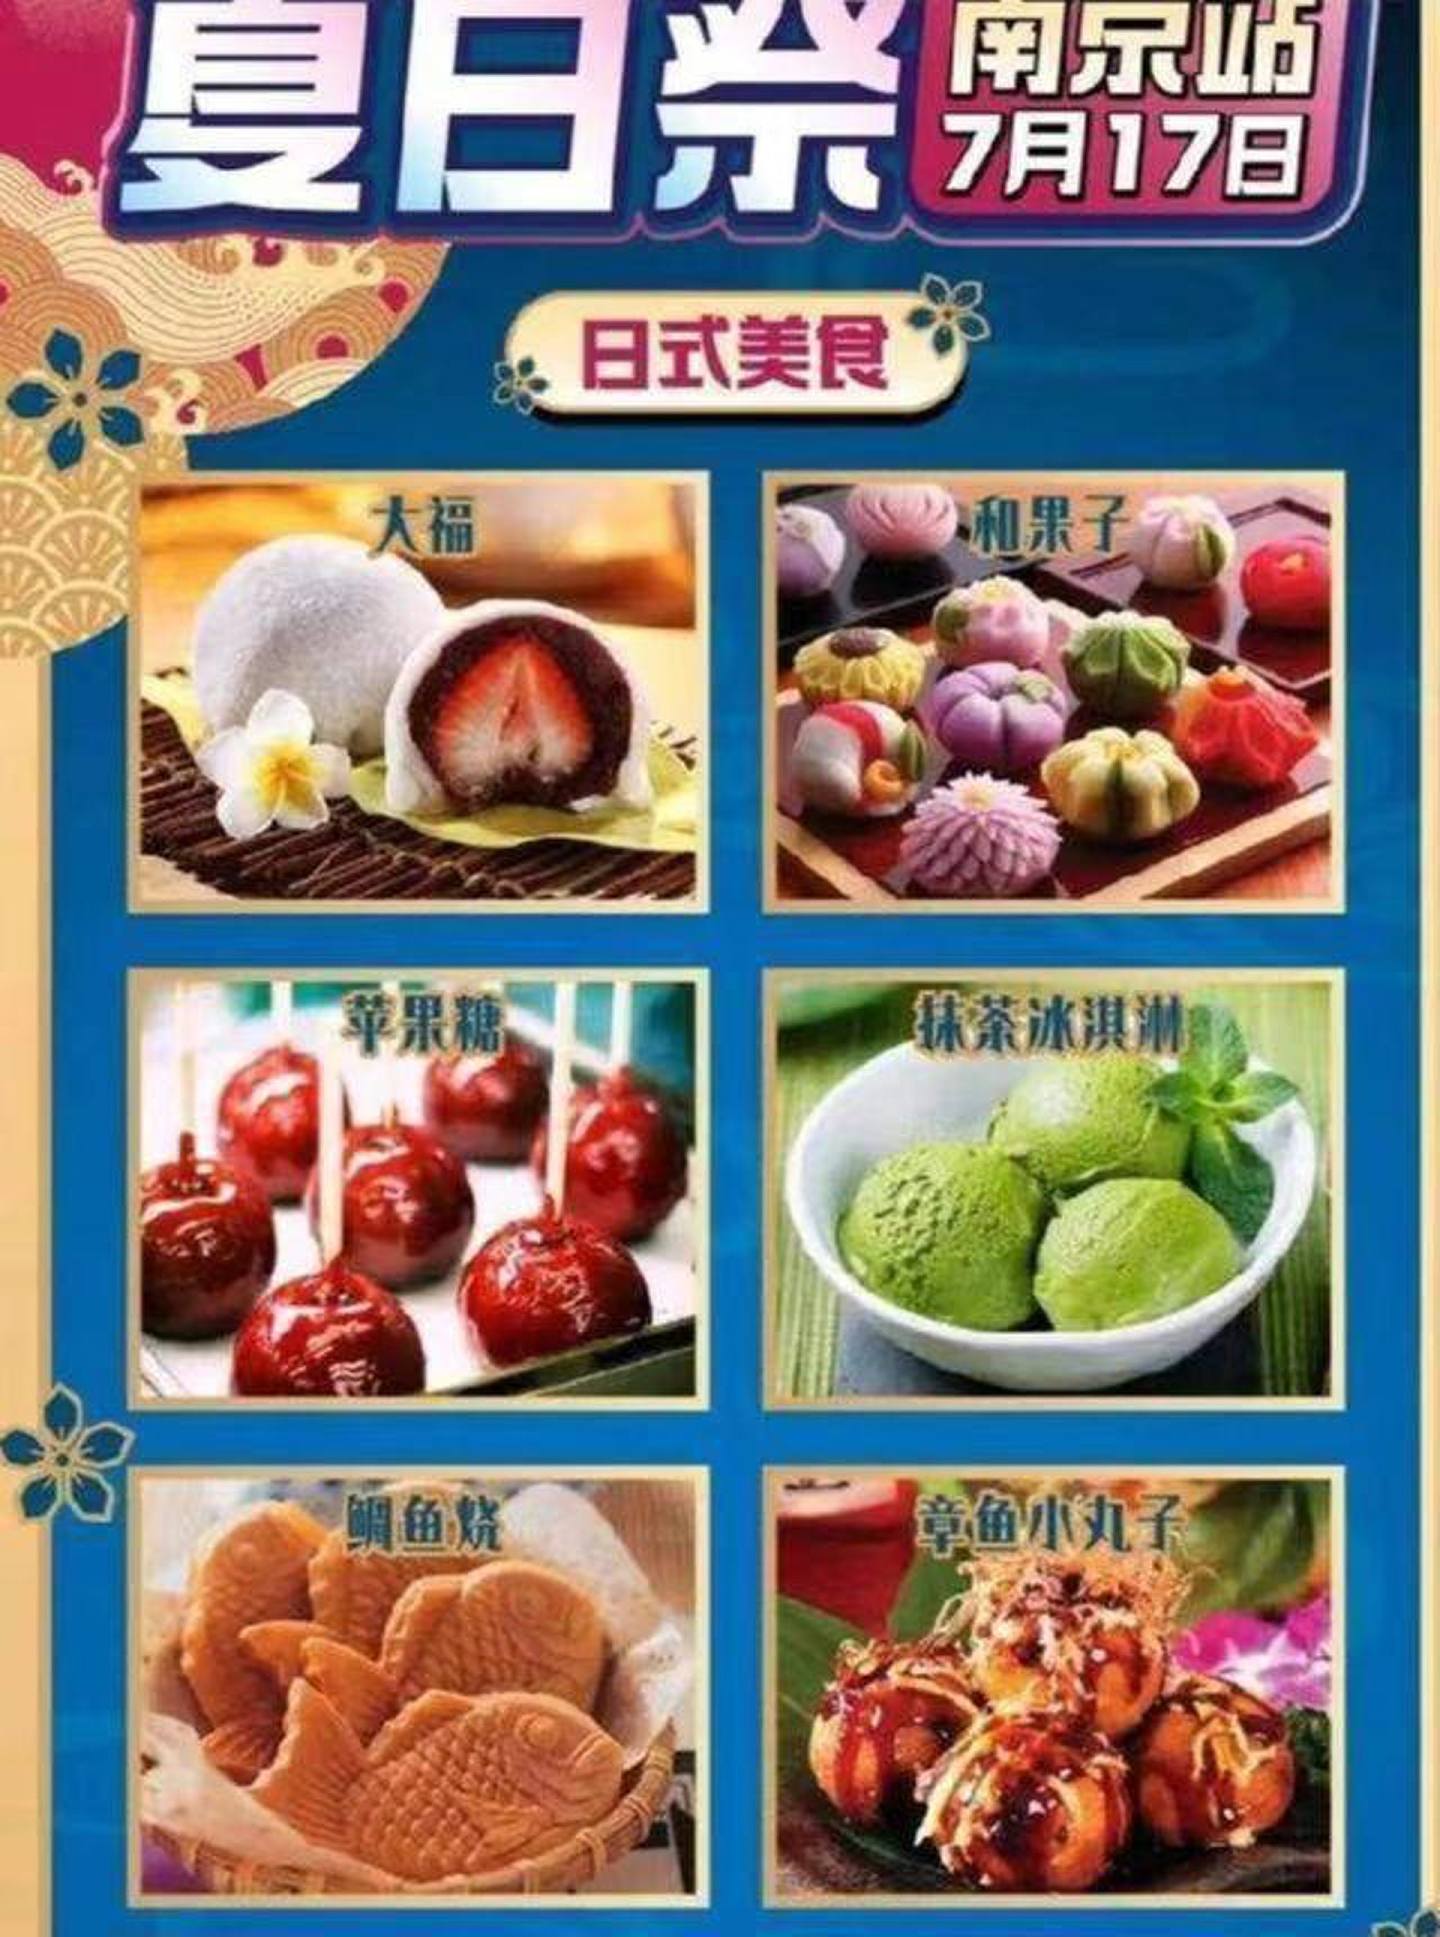 南京原订于17日举办的夏日祭典里面有许多日式点心。 (微博)